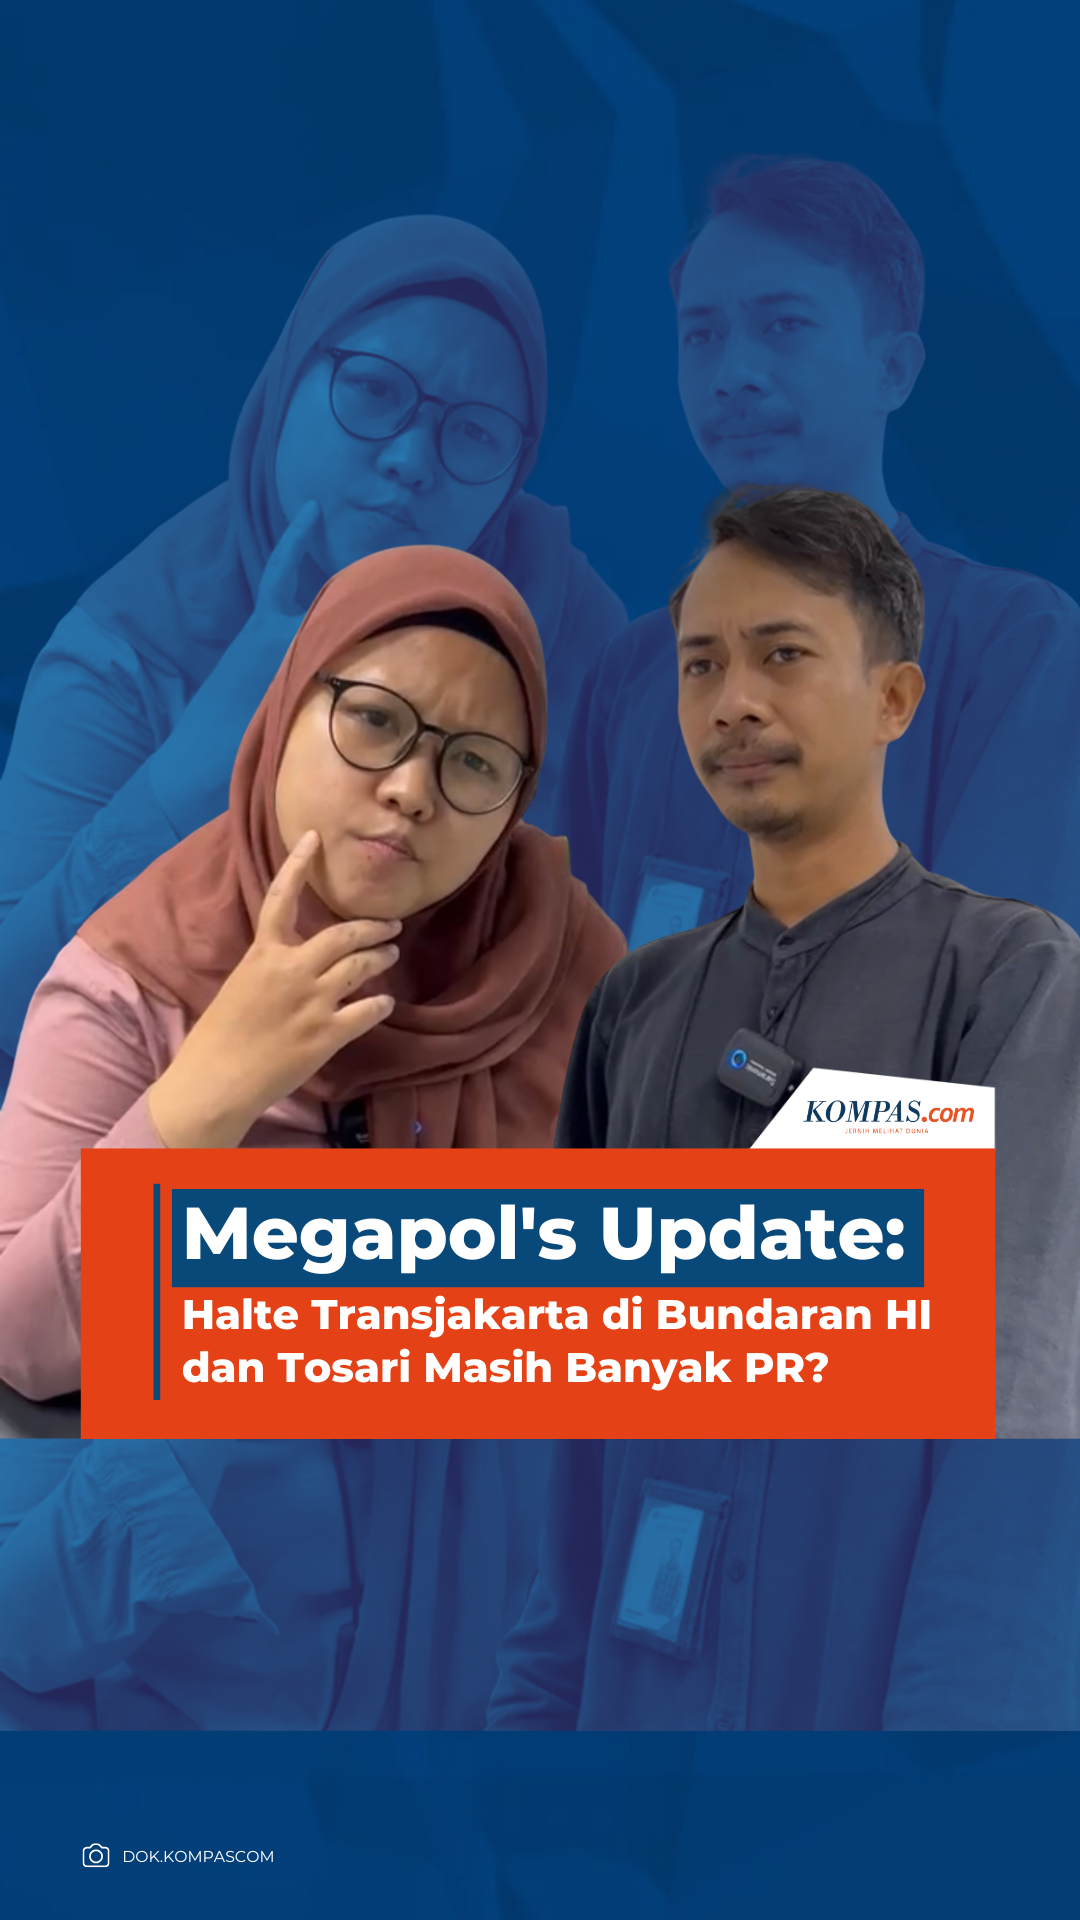 Megapol's Update: Halte Transjakarta di Bundaran HI dan Tosari Masih Banyak PR?